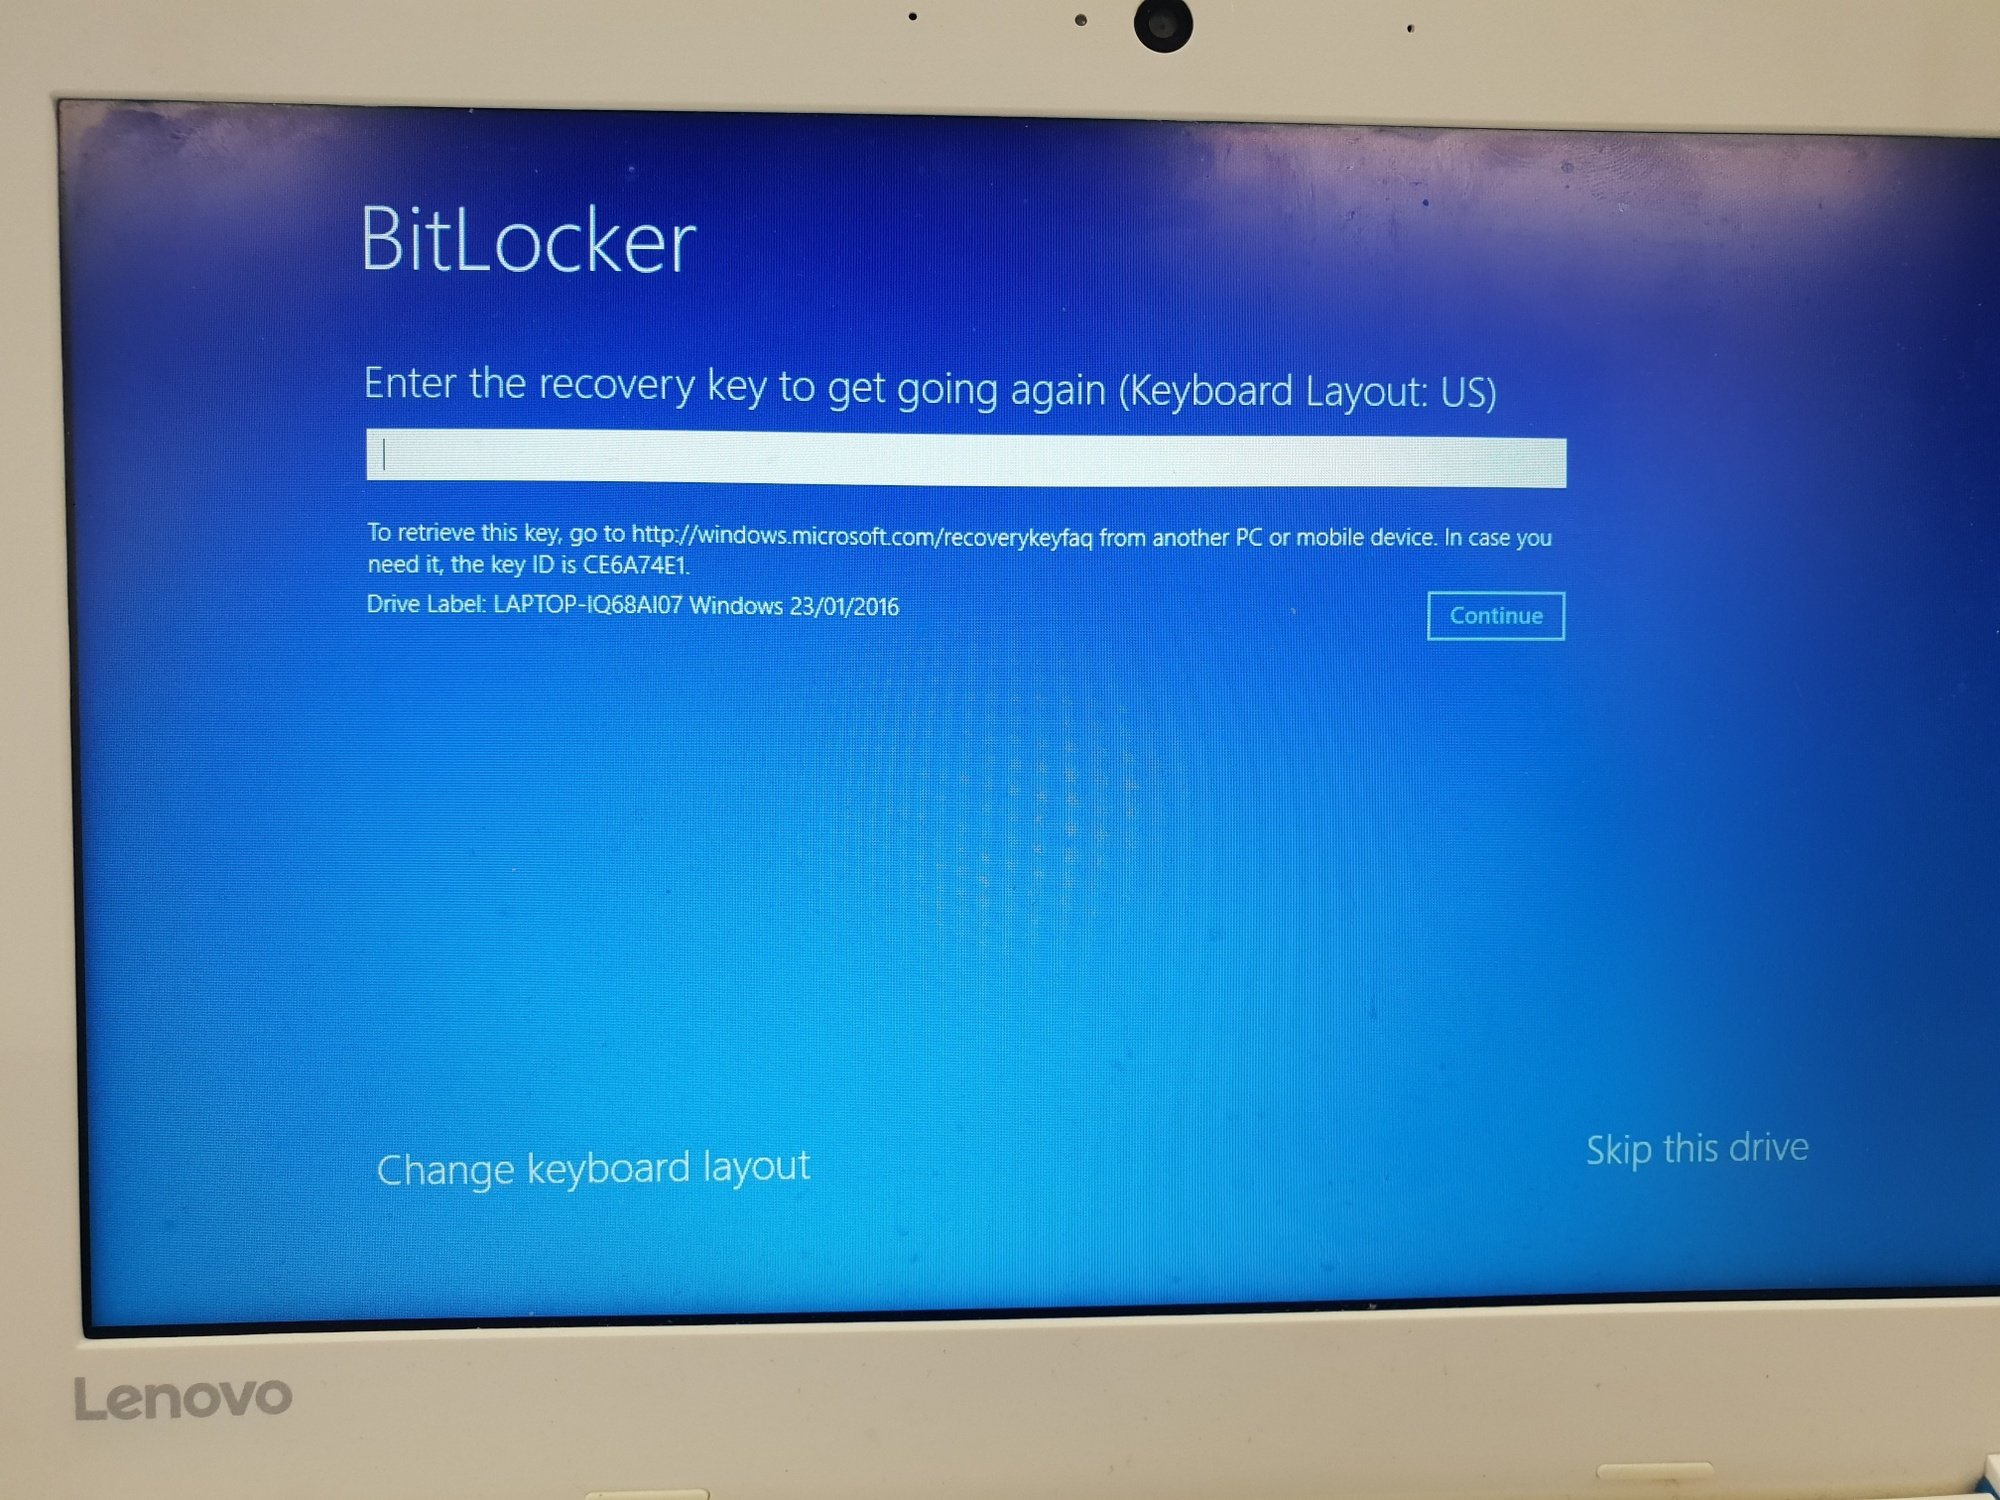 BitLocker Windows 10 89b6be69-022b-48db-9c58-a11466ed6c6b?upload=true.jpg